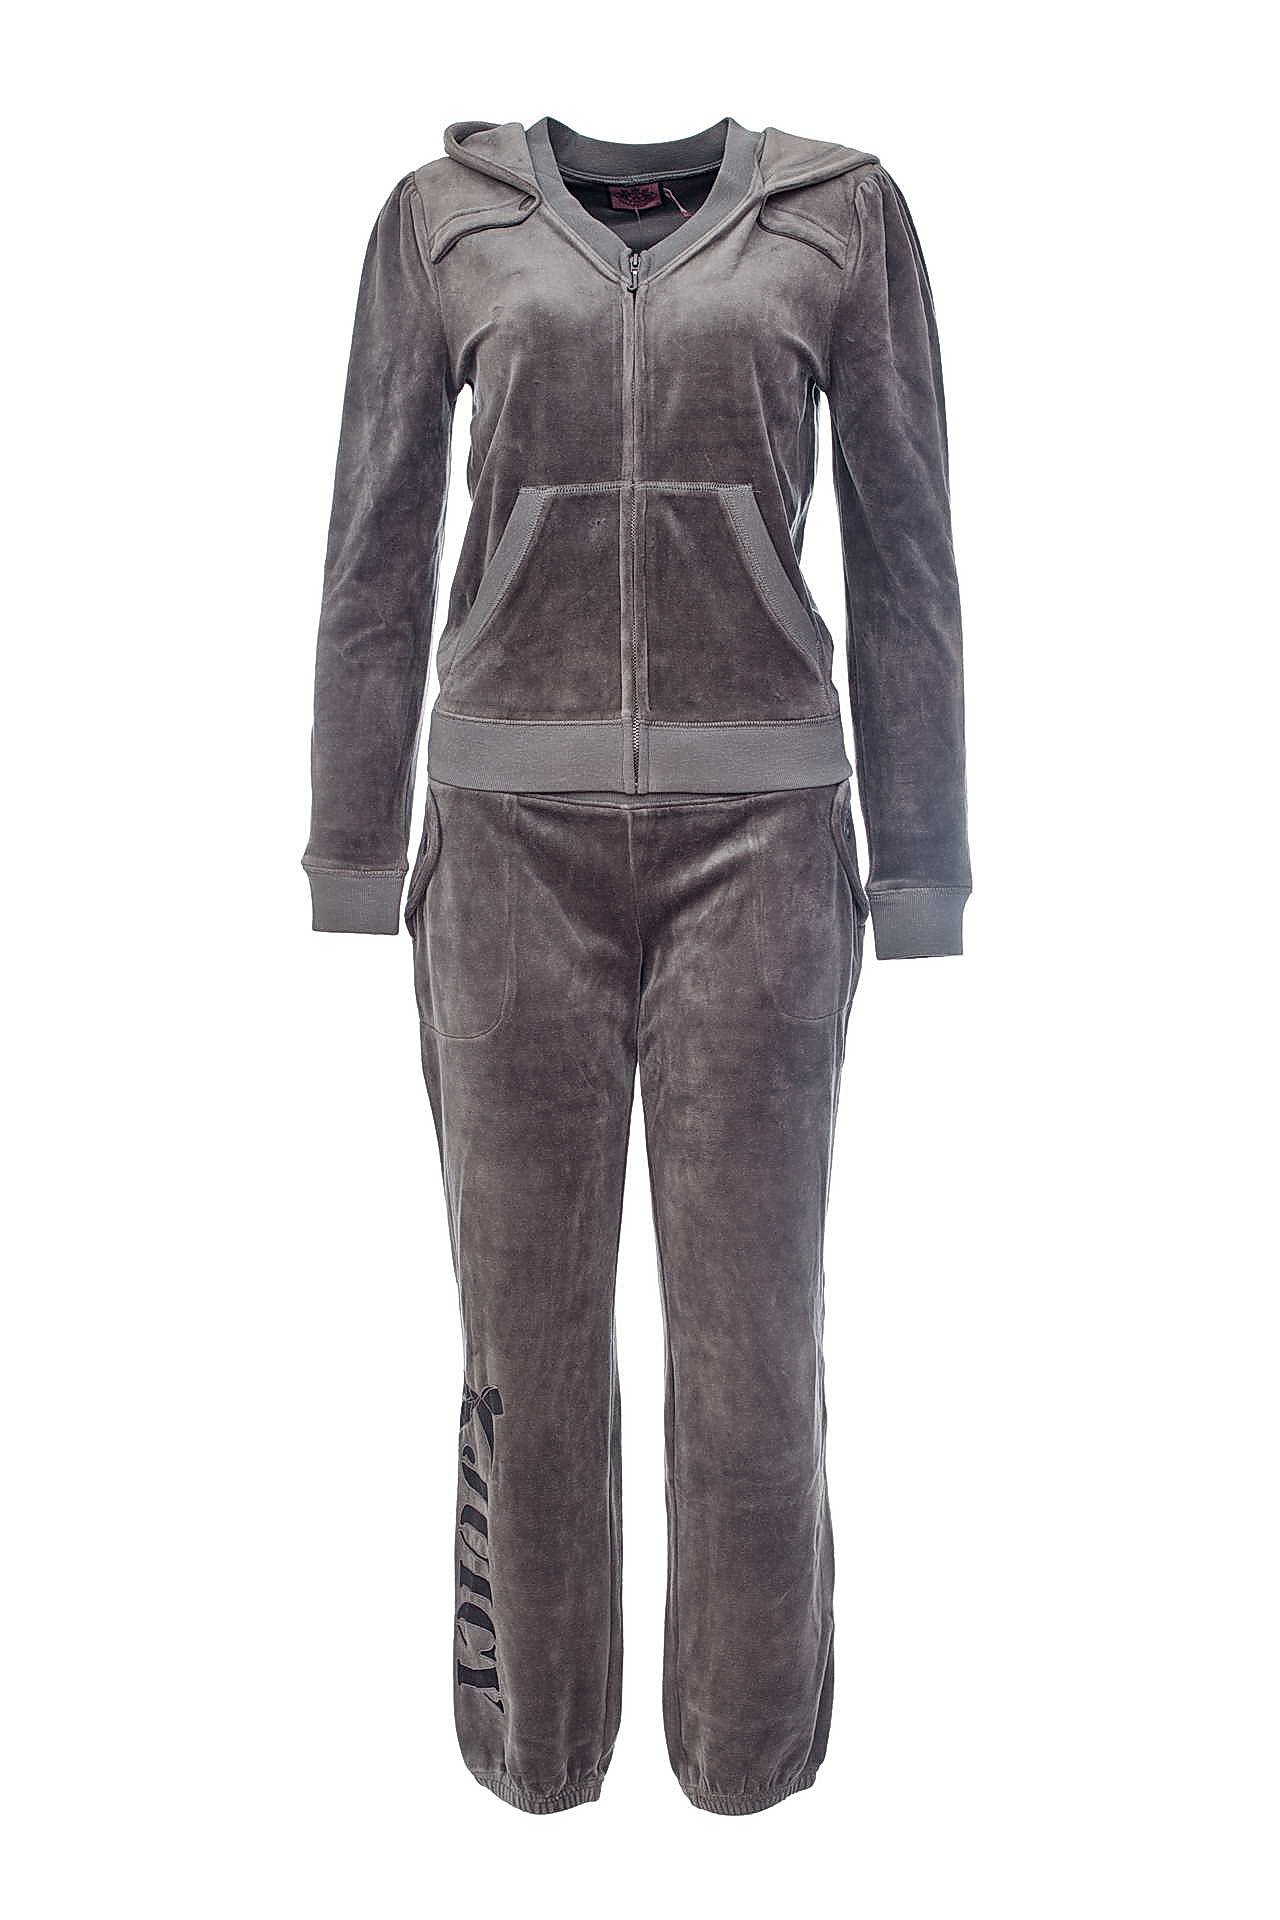 Одежда женская Костюм JUICY COUTURE (JG001682/1683/11.1). Купить за 12950 руб.